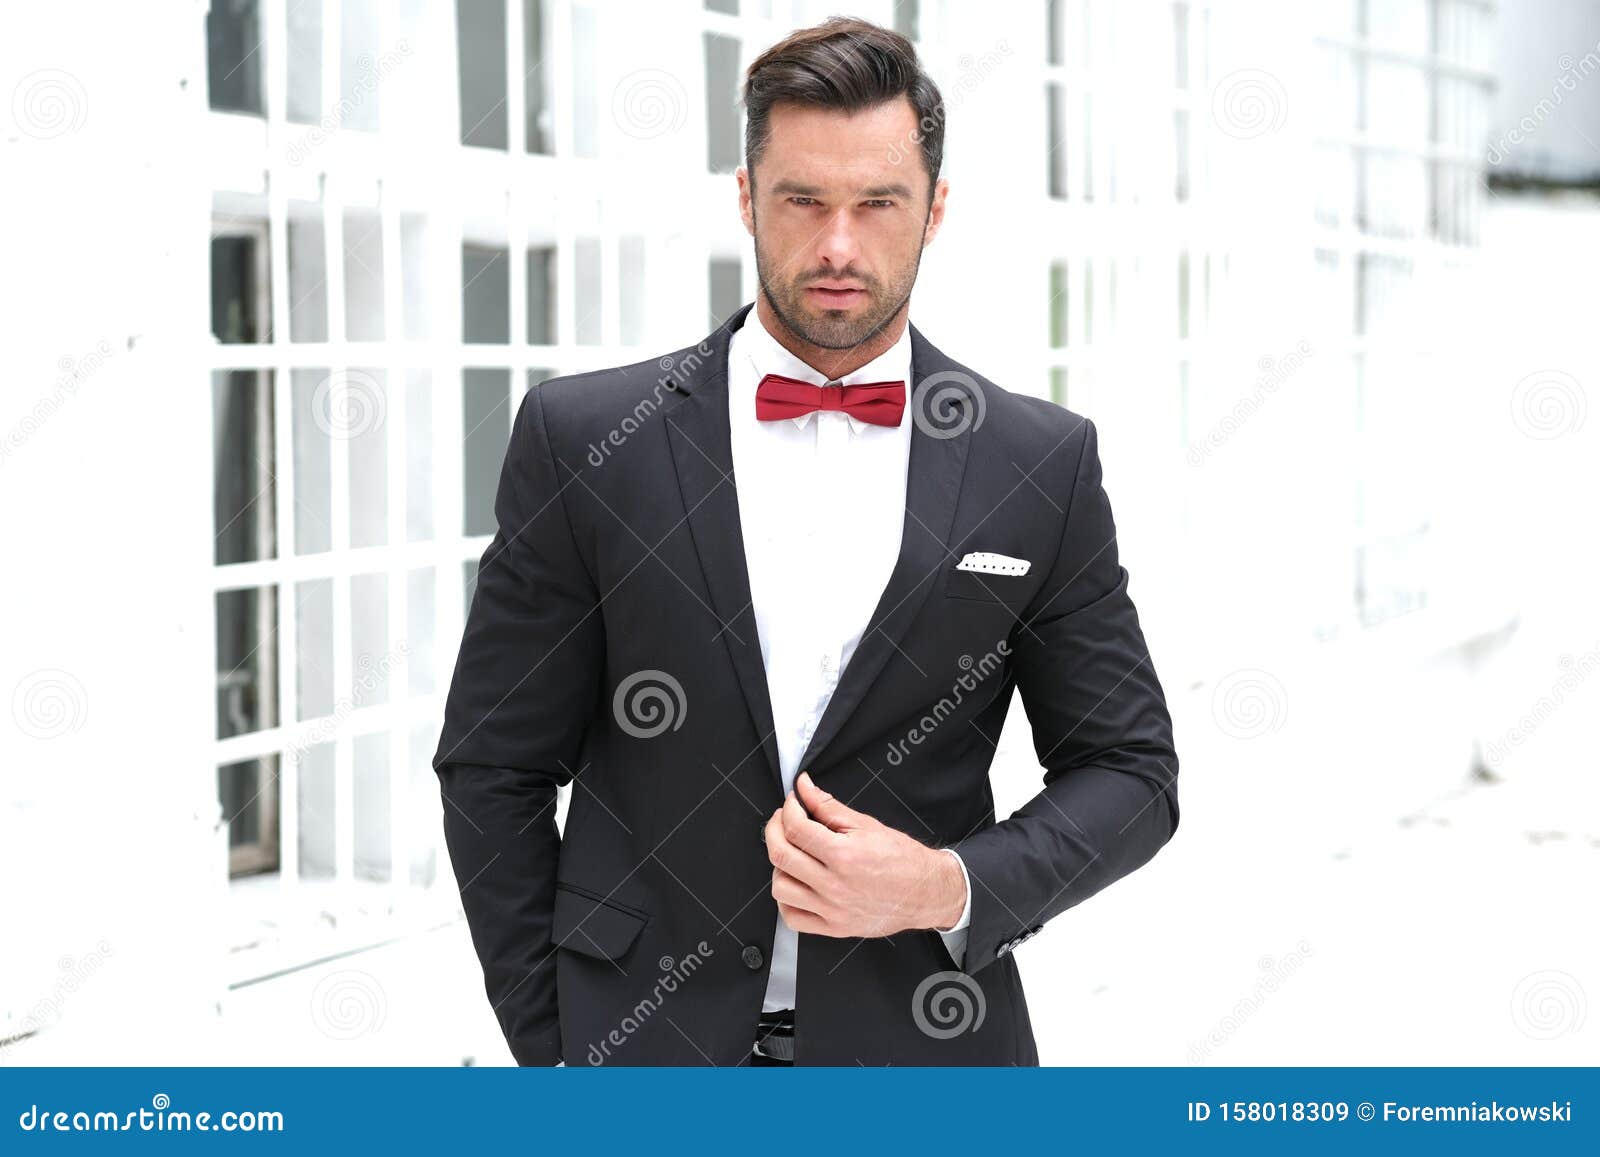 Best suit color for black men | Black suit men, Beige suits for men, Black  men beard styles